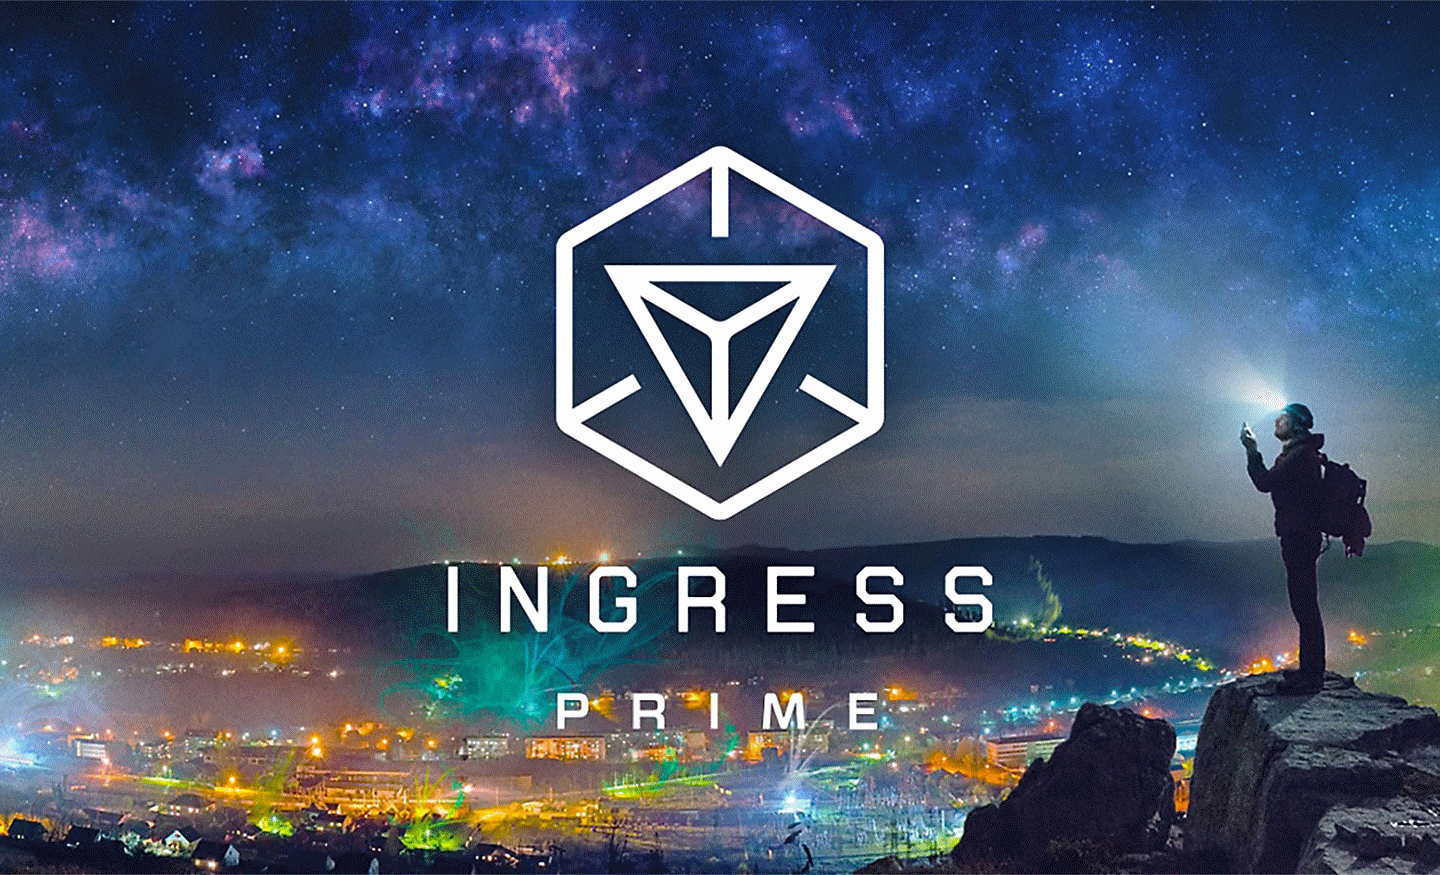 Εικόνα πόλης από ψηλά με το λογότυπο Ingress Prime σε υπέρθεση στο μέσον